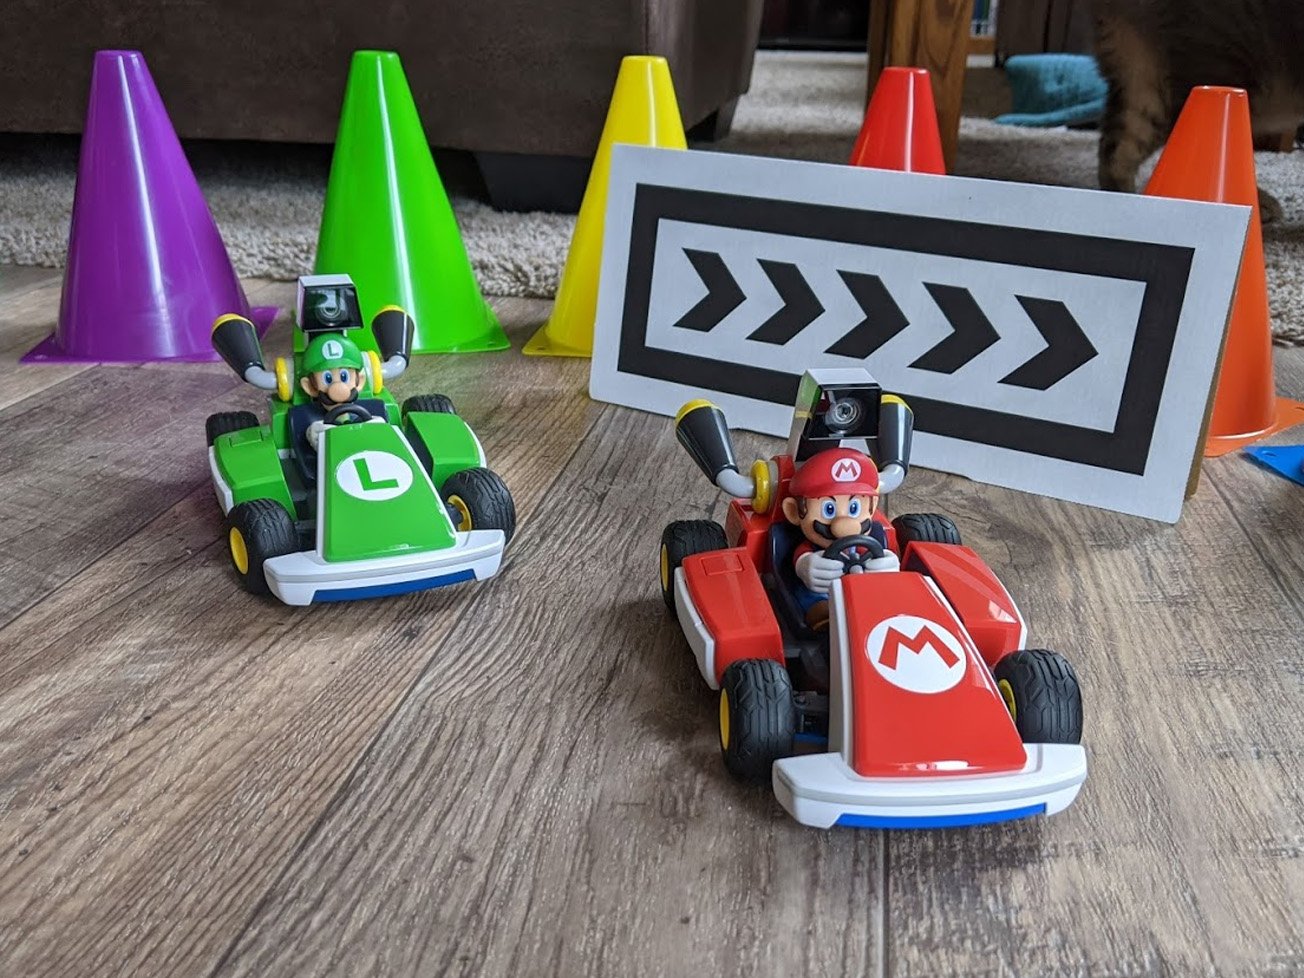 Mario Kart Live Mario And Luigi With Cones